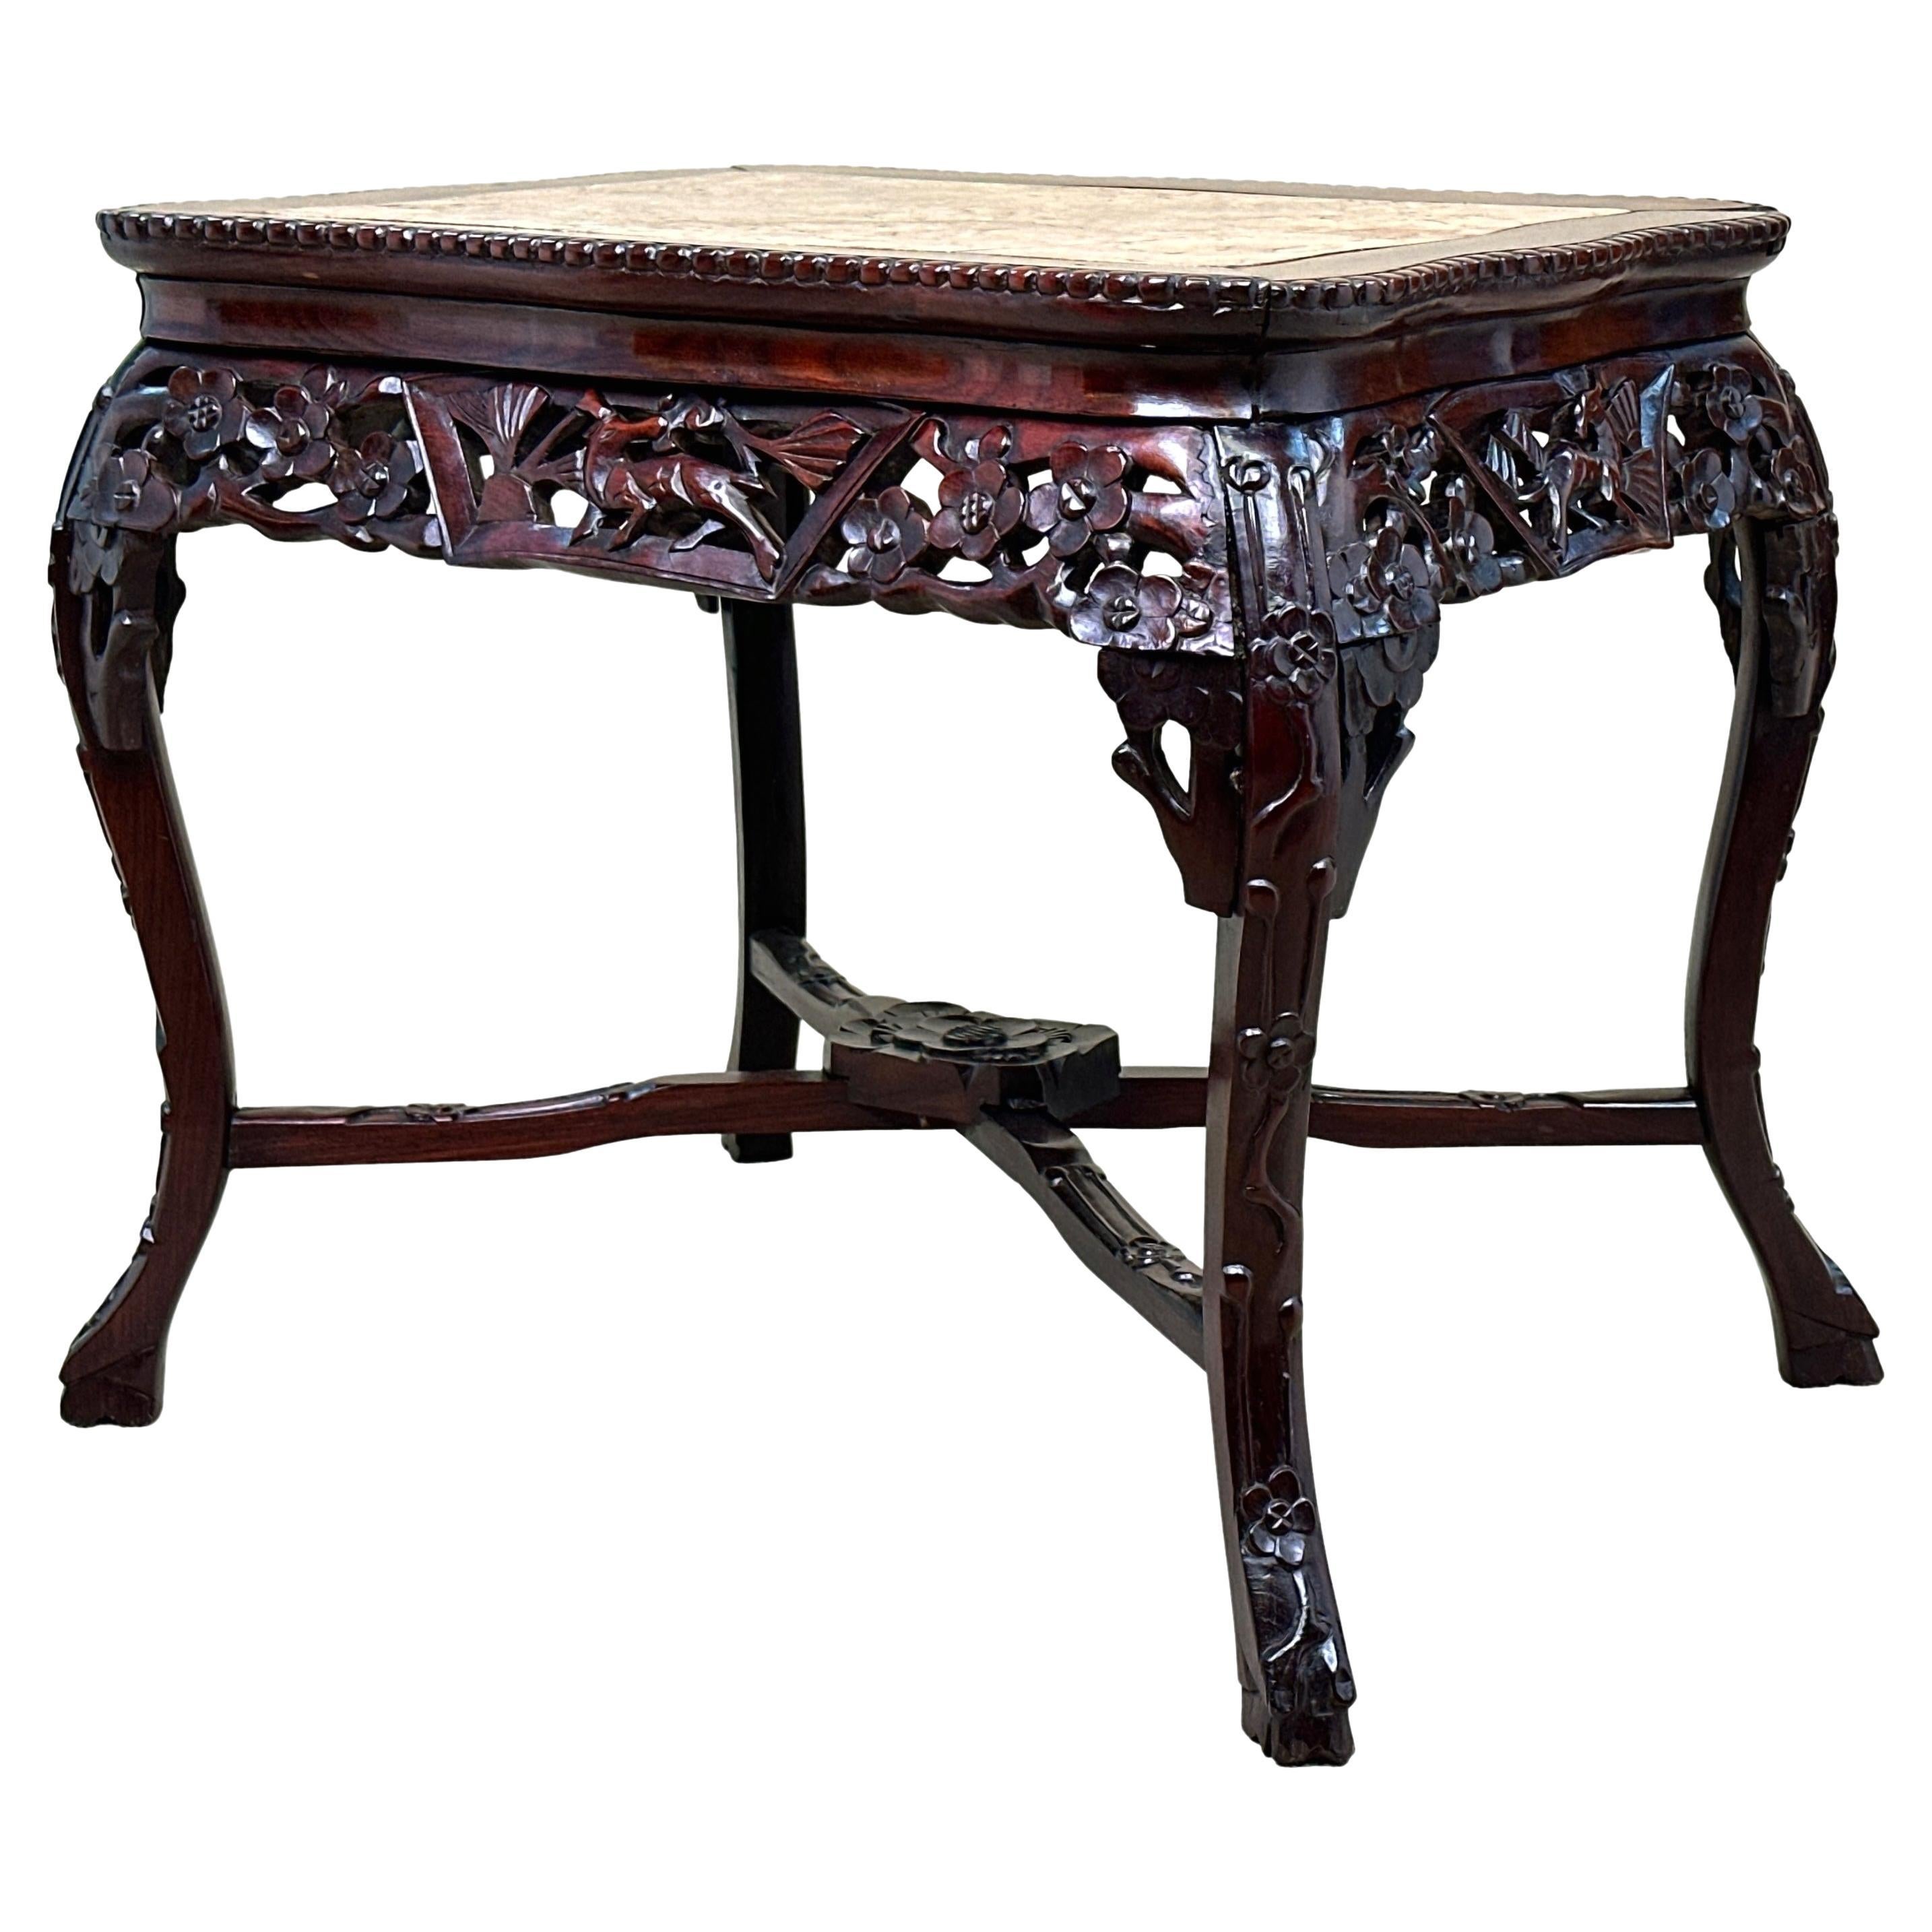 Table basse rectangulaire en bois dur oriental du XIXe siècle